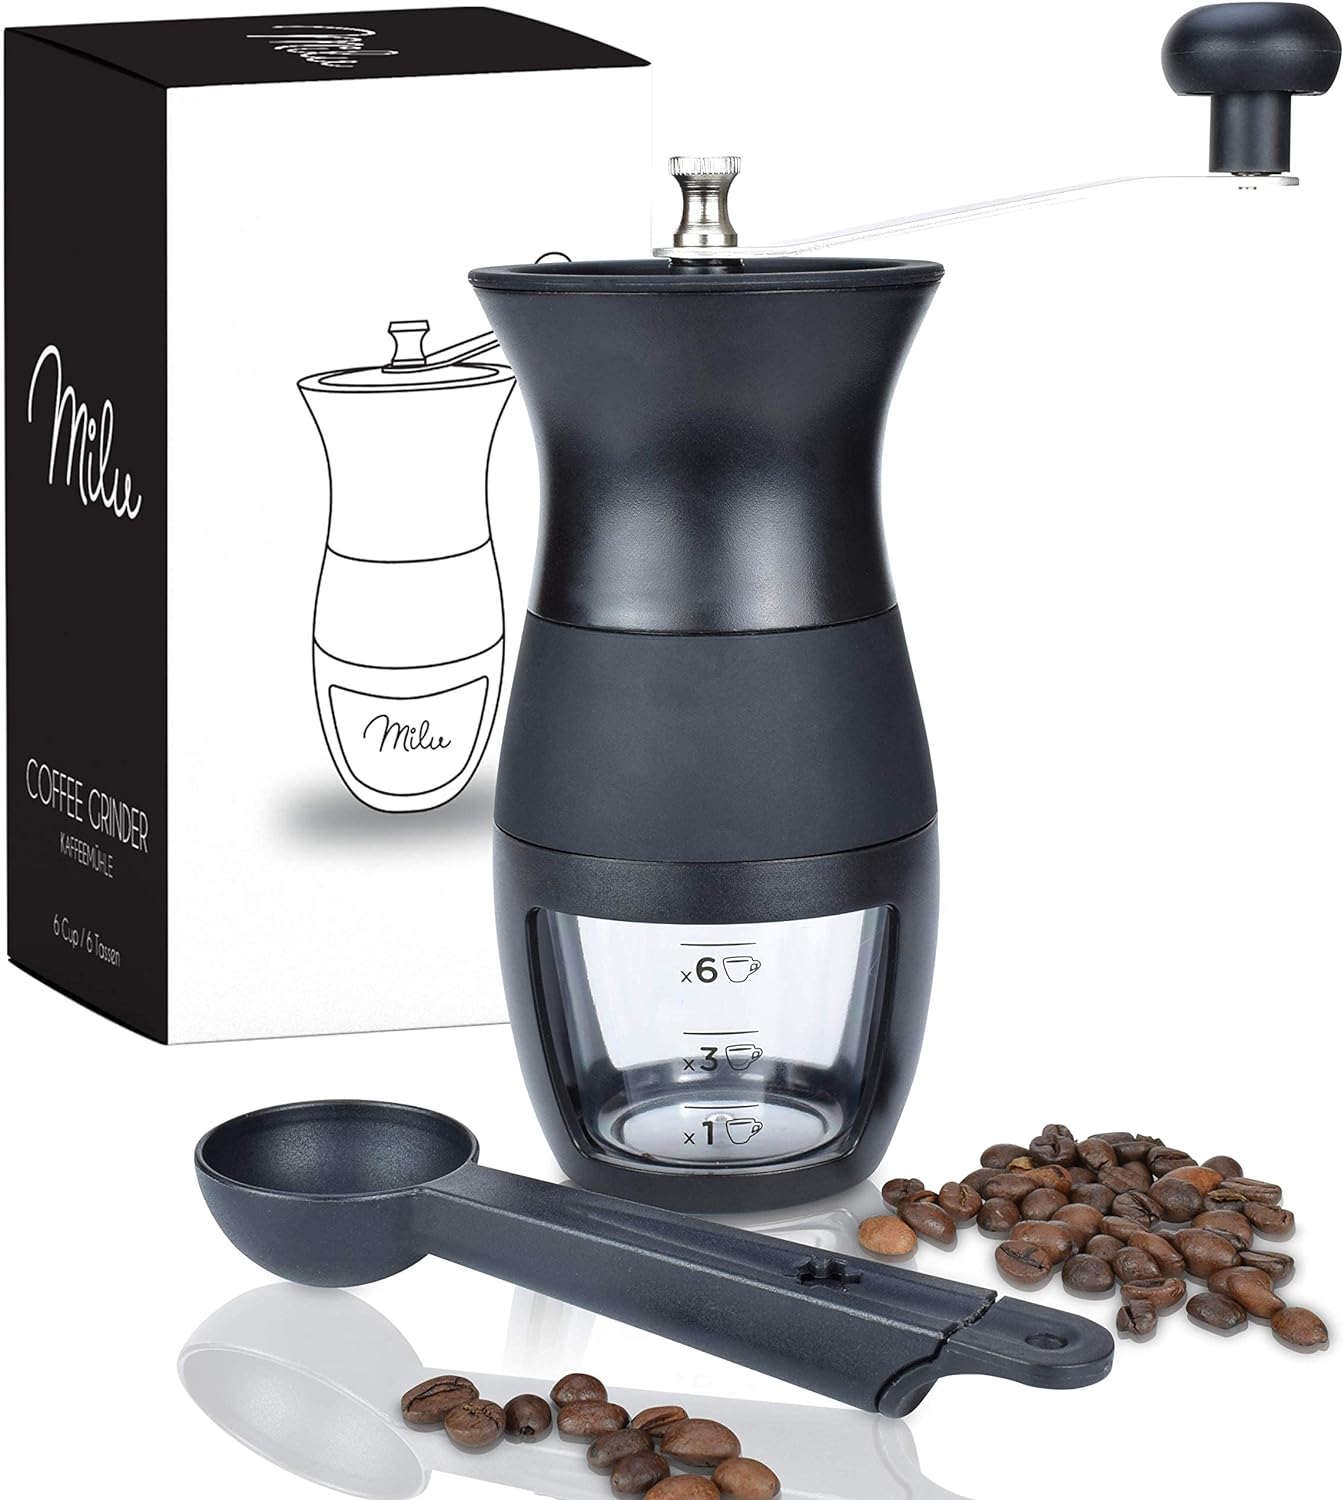 Milu Manual Coffee Grinder, Hand Coffee Grinder with Ceramic Grinder, Espresso Grinder with Adjustable Grinding Level (Plastic, Black)